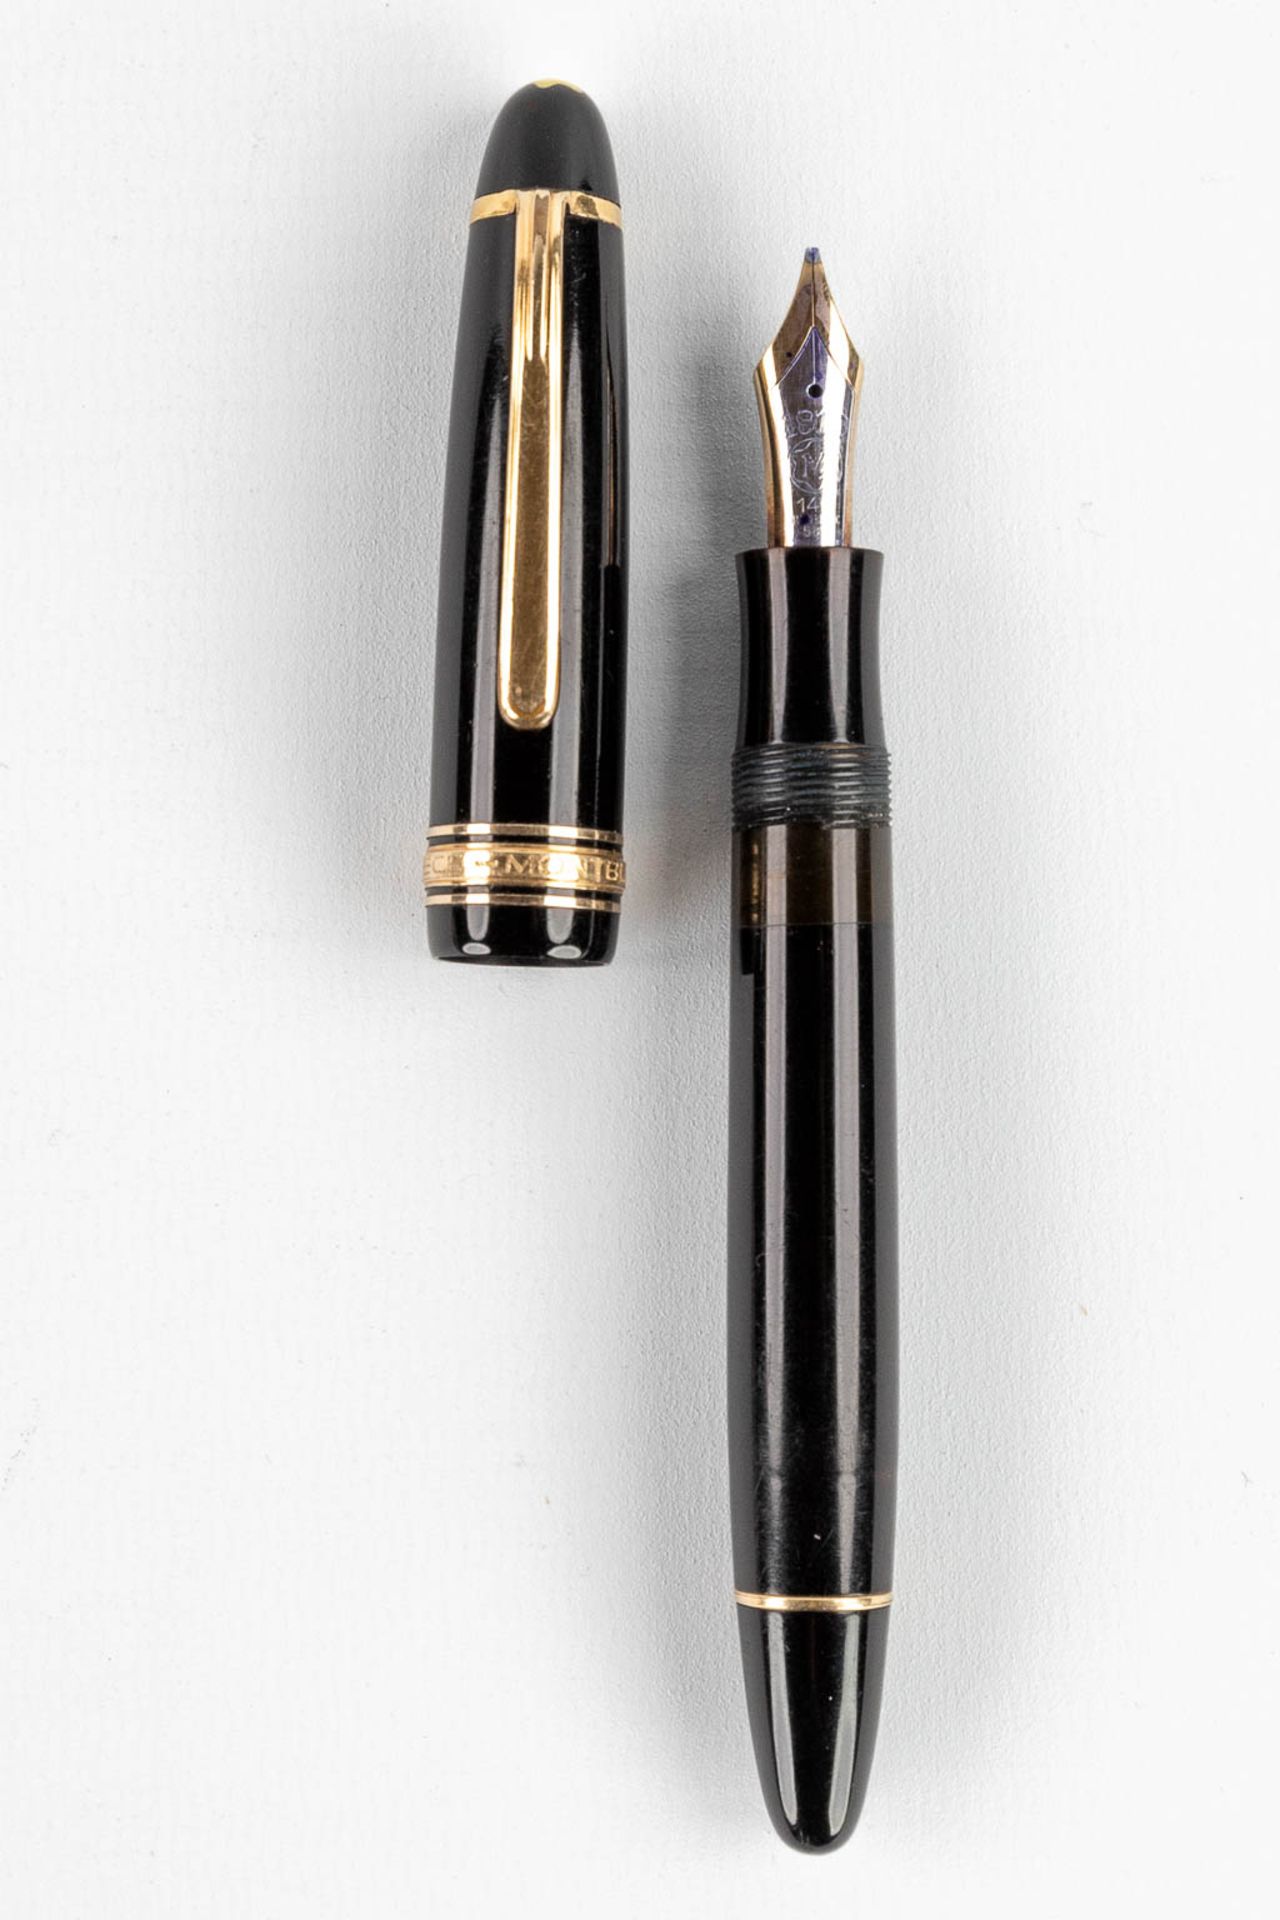 Montblanc Masterpiece, a fountain pen with 14 karat gold nib. - Bild 7 aus 12